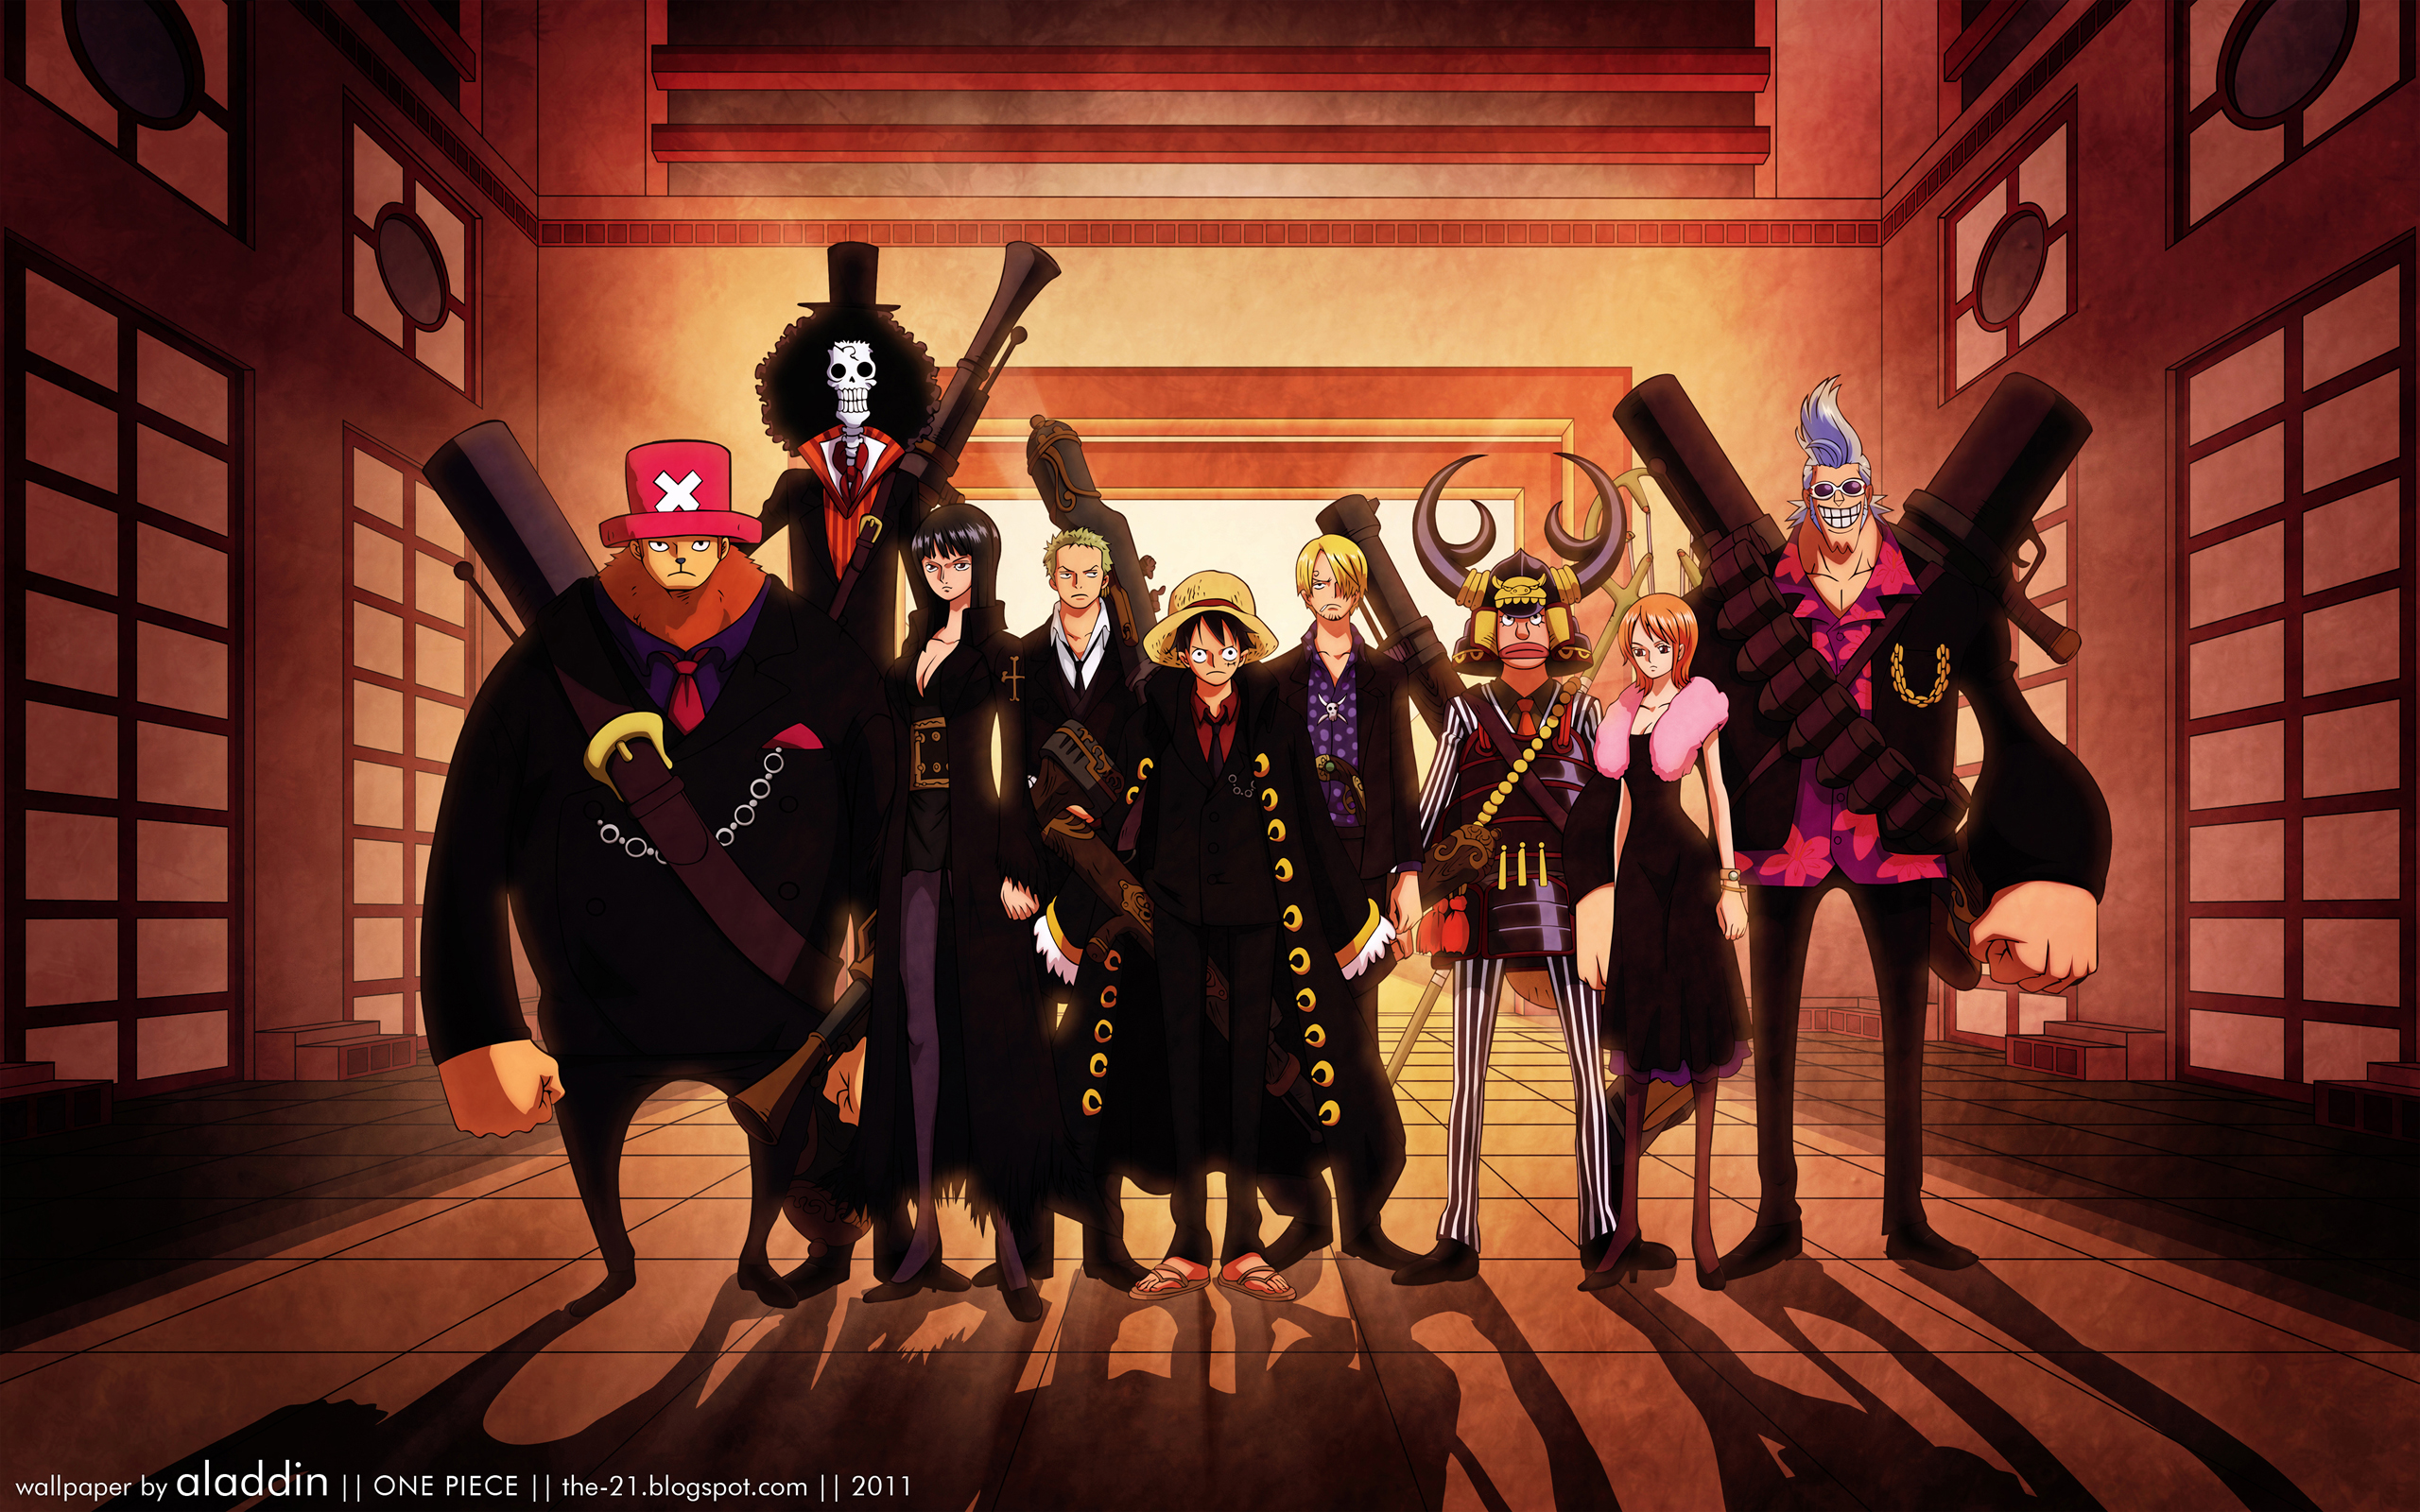 One Piece anime characters, Tony Tony Chopper, Brook, Nico Robin, Roronoa Zoro, Monkey D. Luffy, Sanji, Usopp, Nami, Franky.